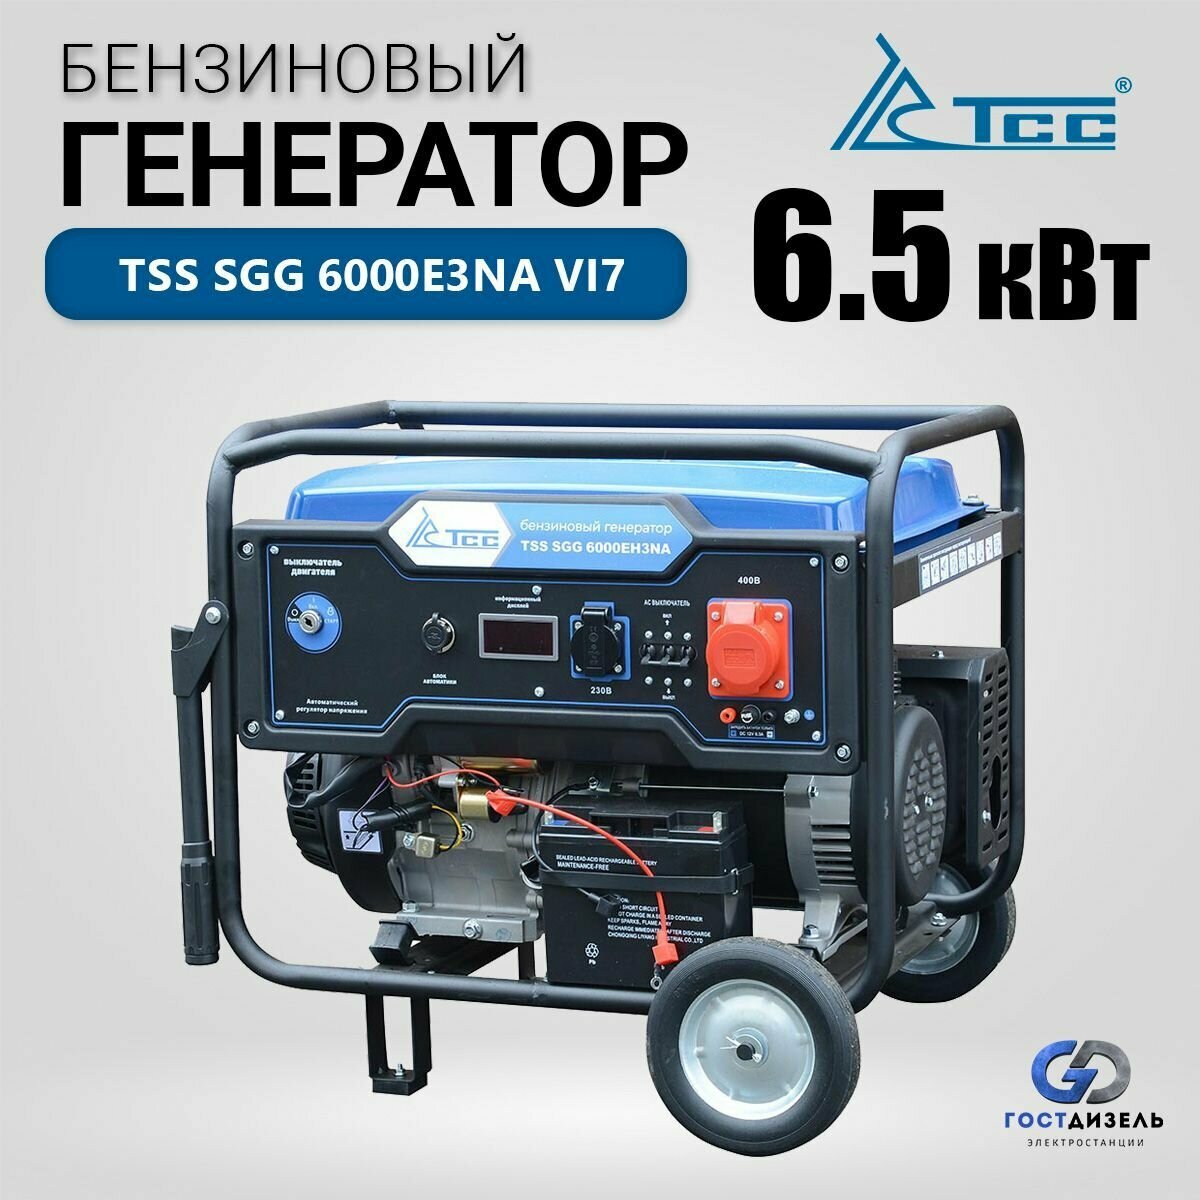 Бензиновый генератор трёхфазный TSS SGG 6000EH3NA VI7 (6,5 кВт. 3 фазы) с электростартером и разъемом для АВР